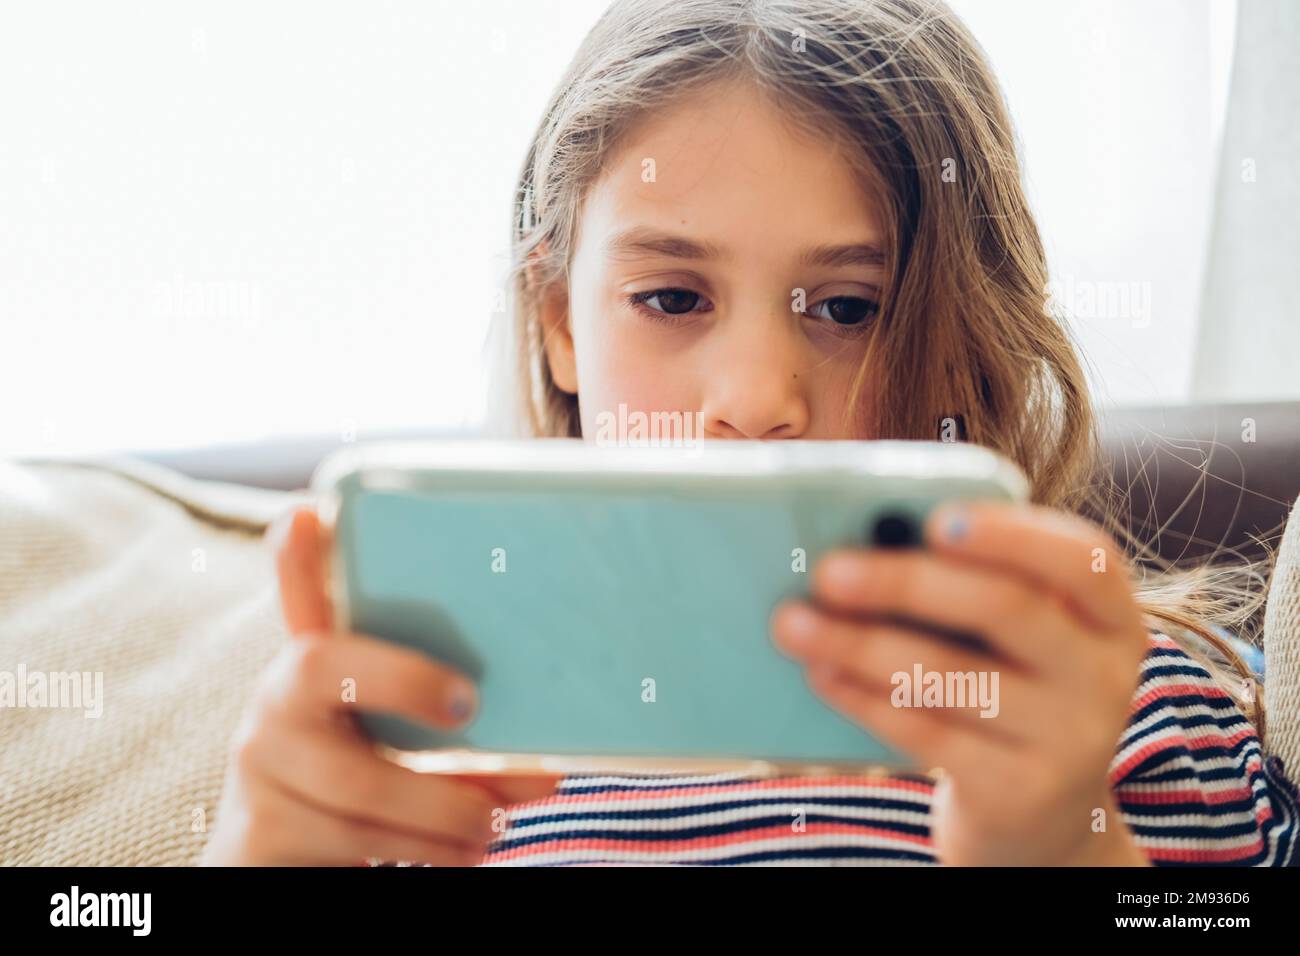 Bambina al telefono immagini e fotografie stock ad alta risoluzione - Alamy